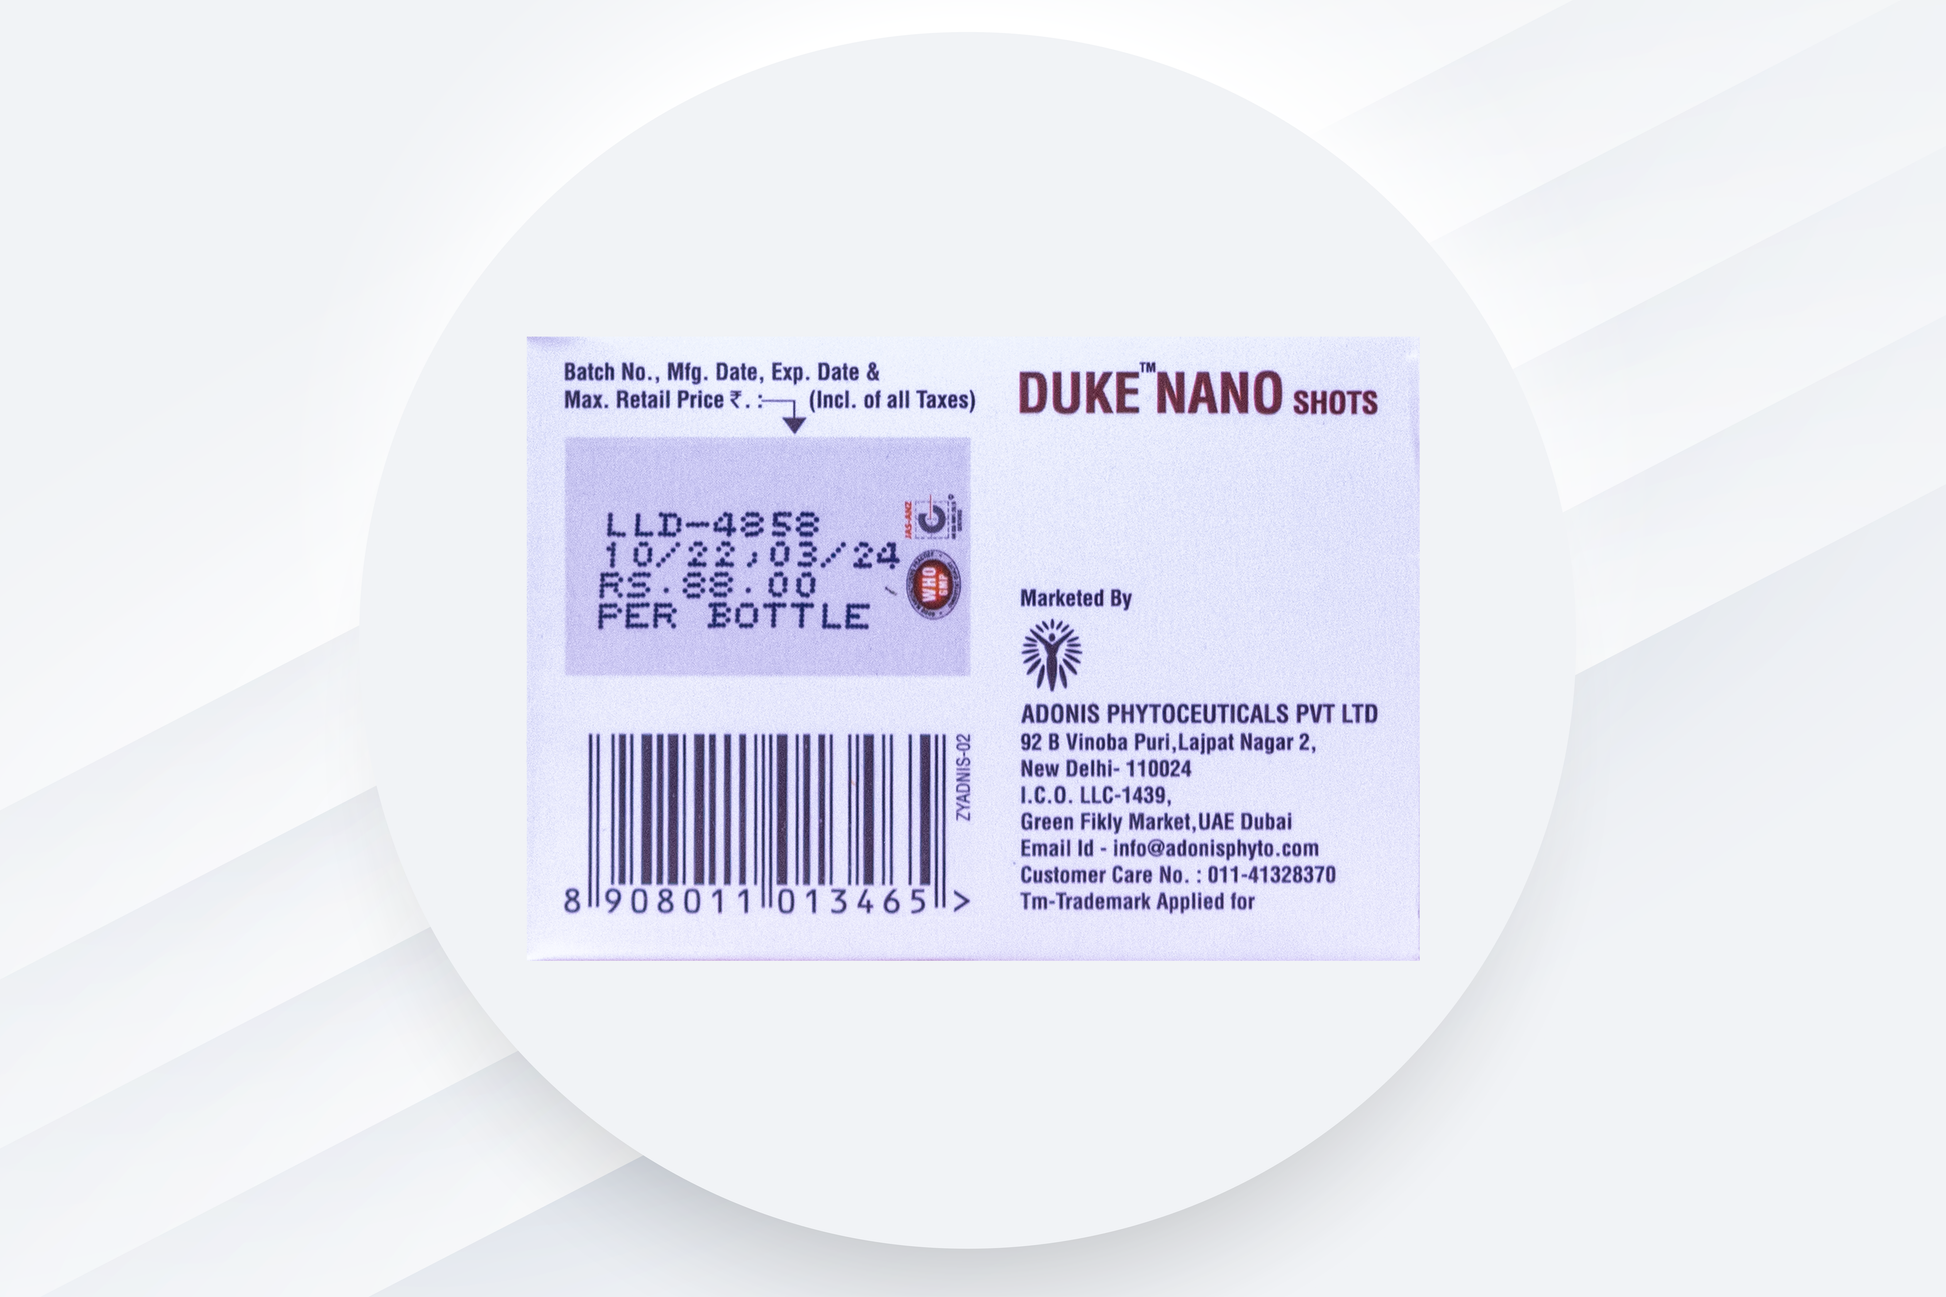 Adonis-Duke-Nano-Shots-(Vit D3)-clintry